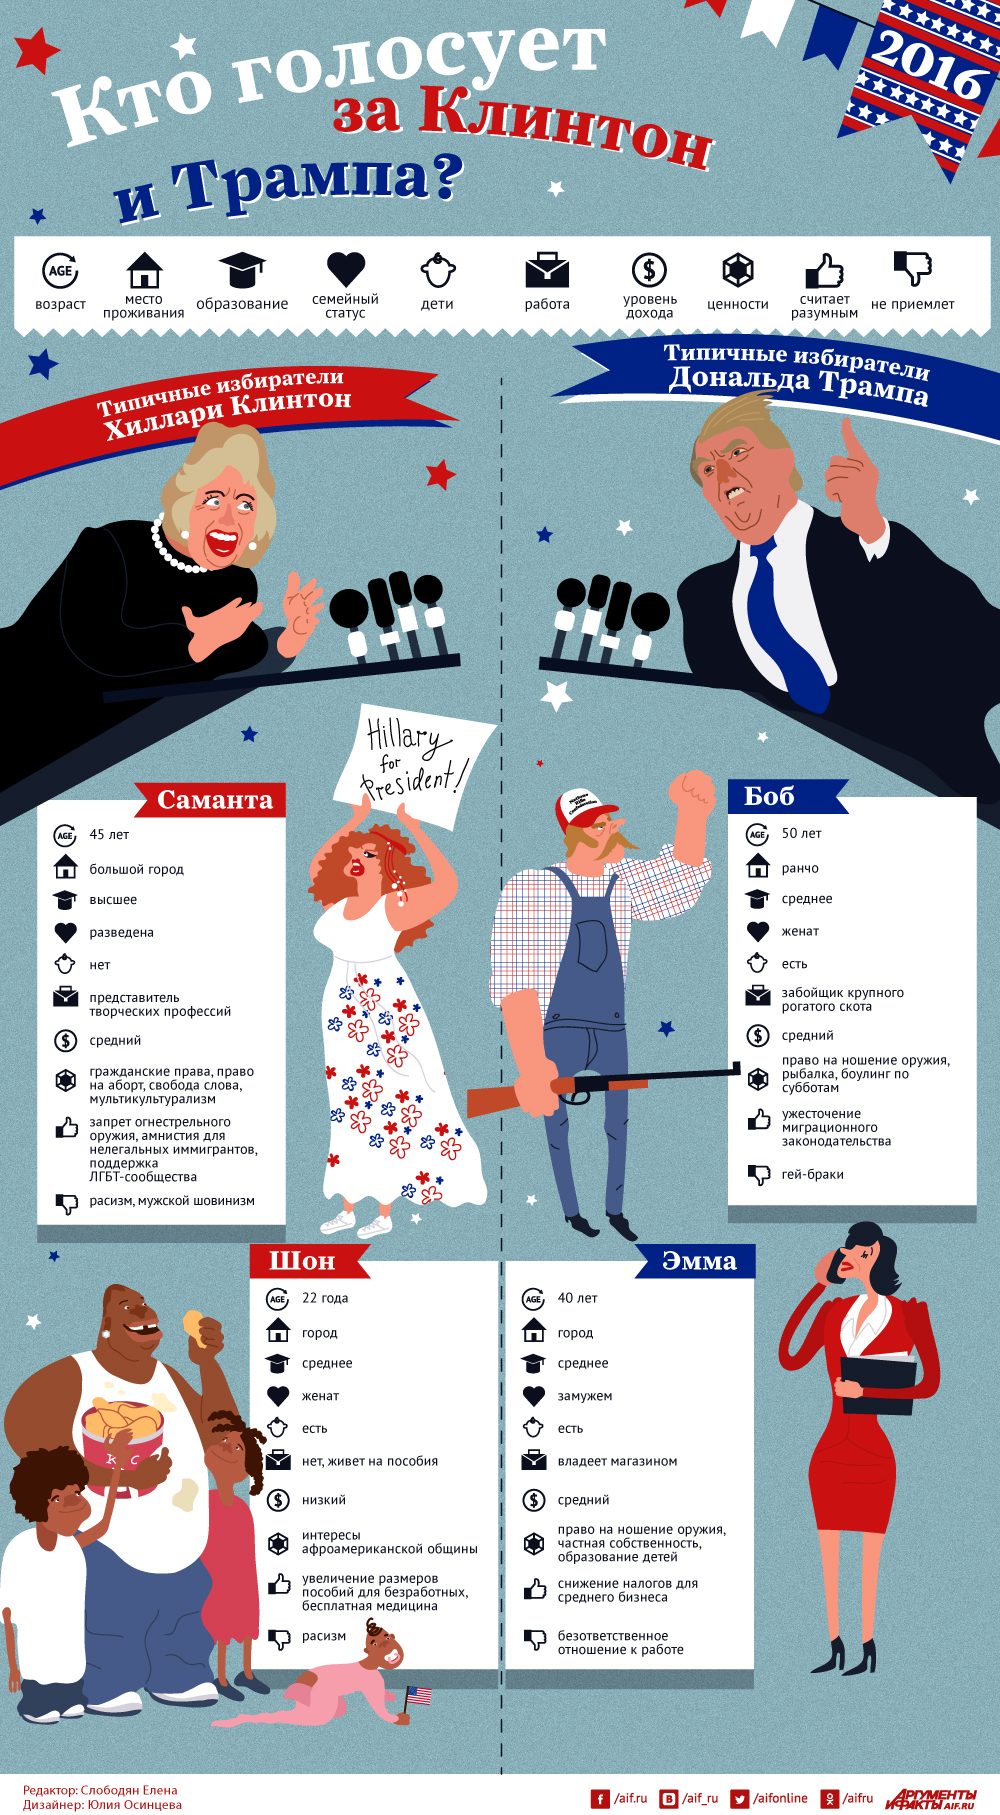 Социальный состав избирателей президента США